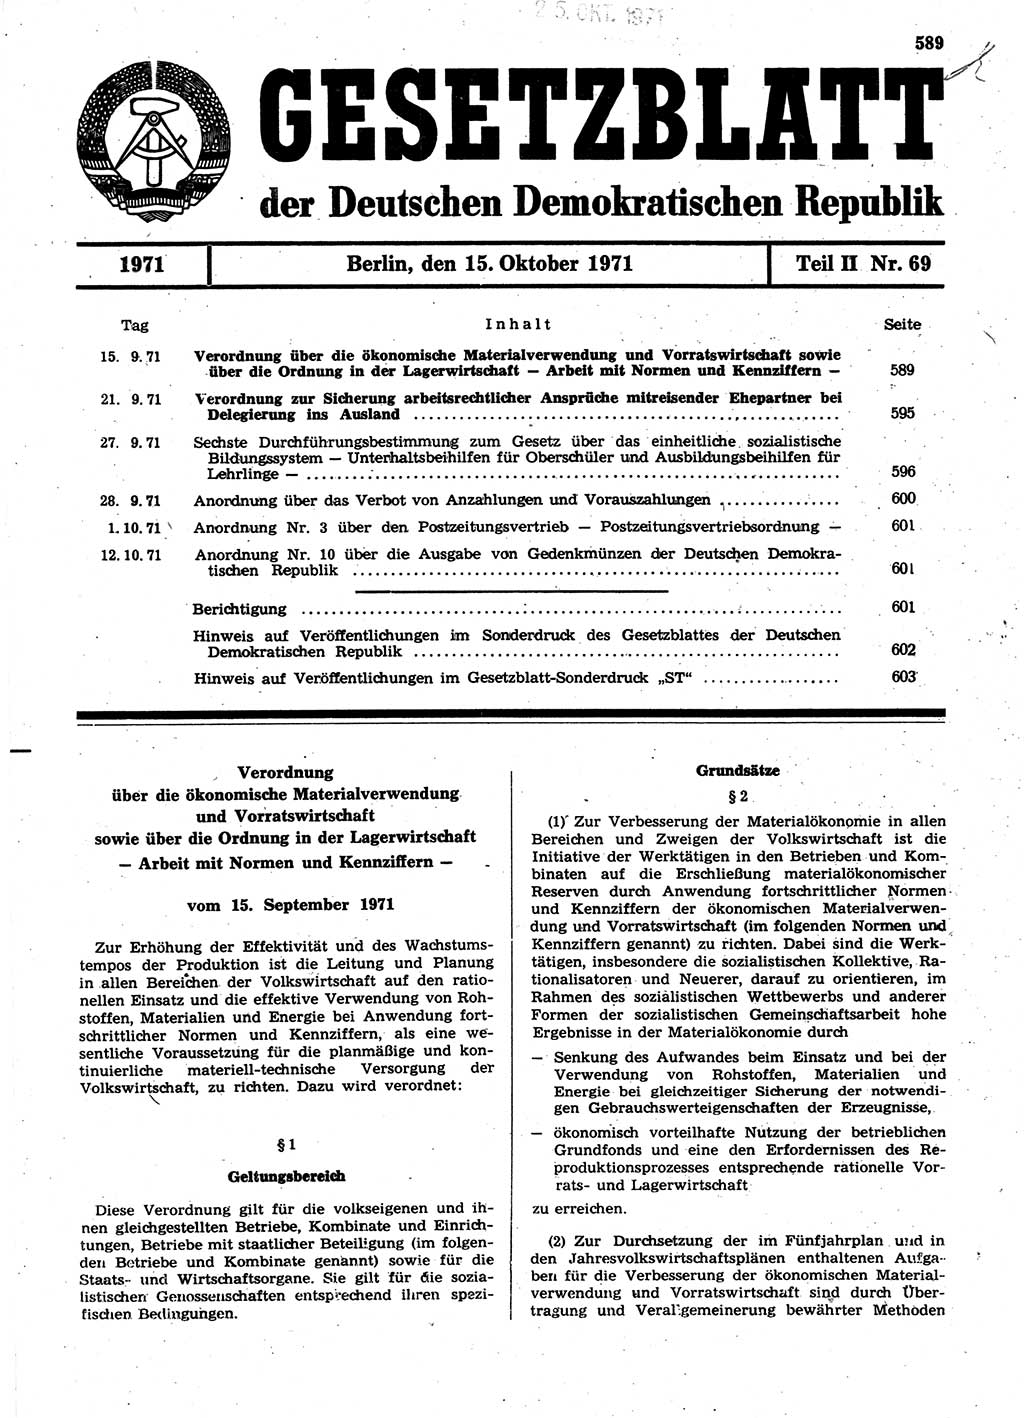 Gesetzblatt (GBl.) der Deutschen Demokratischen Republik (DDR) Teil ⅠⅠ 1971, Seite 589 (GBl. DDR ⅠⅠ 1971, S. 589)